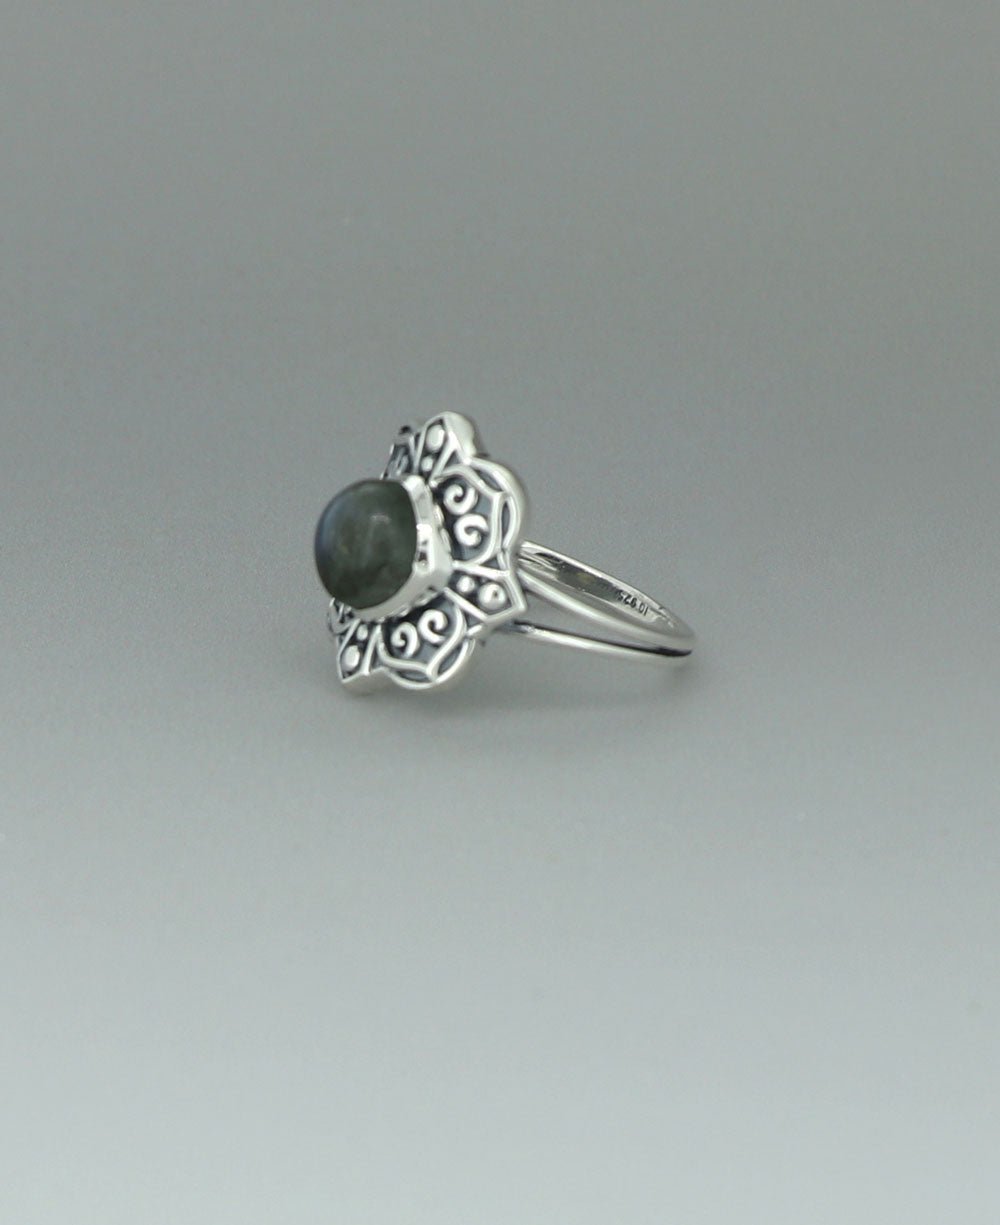 Sterling Silver Labradorite Ring with Lotus Mandala Design - Rings 6